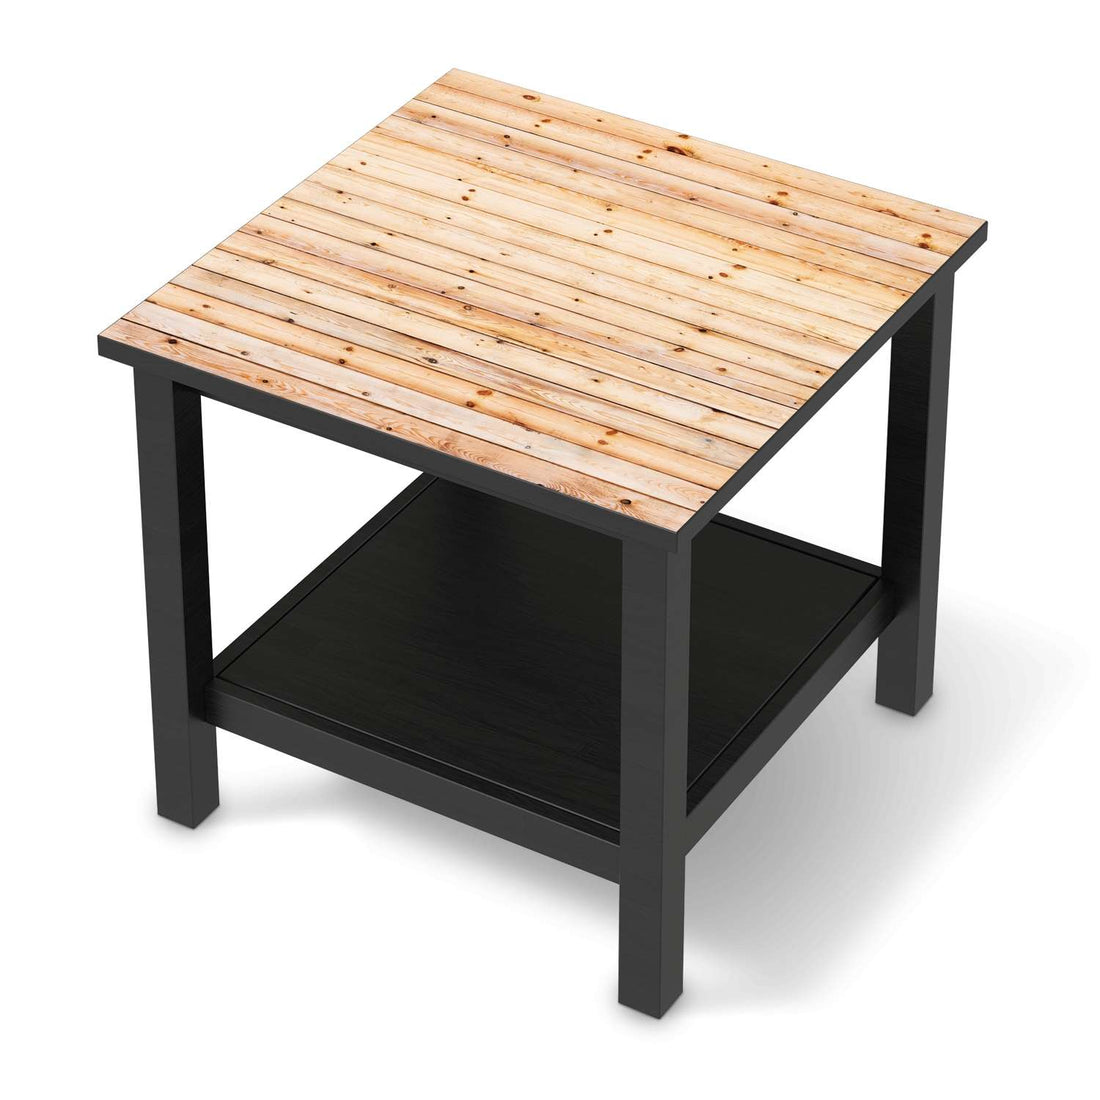 Möbel Klebefolie Bright Planks - IKEA Hemnes Beistelltisch 55x55 cm - schwarz